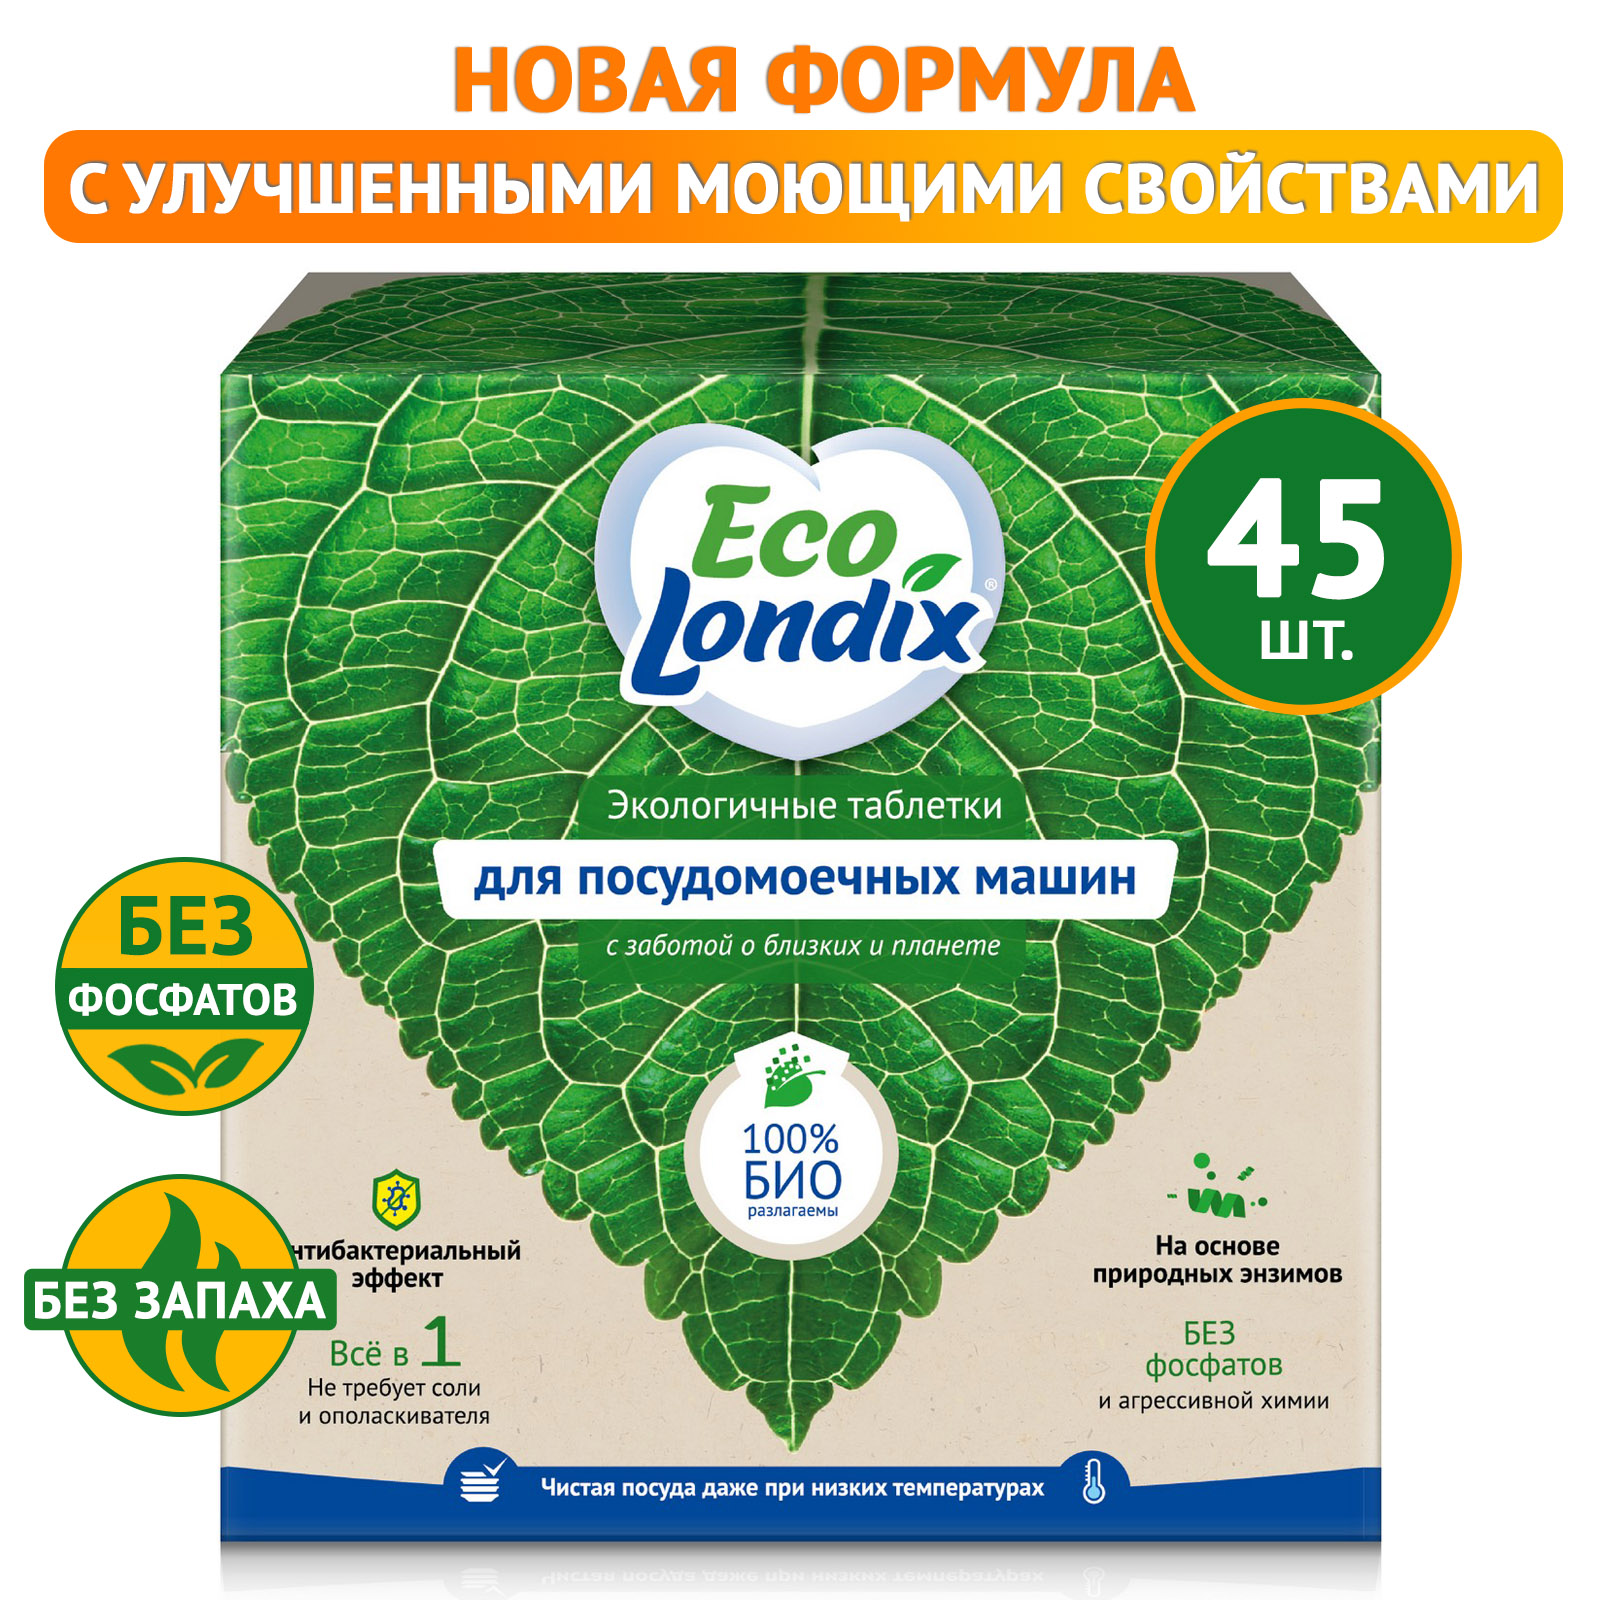 Экологичные таблетки для посудомоечной машины Eco Londix, без запаха, 45 шт.